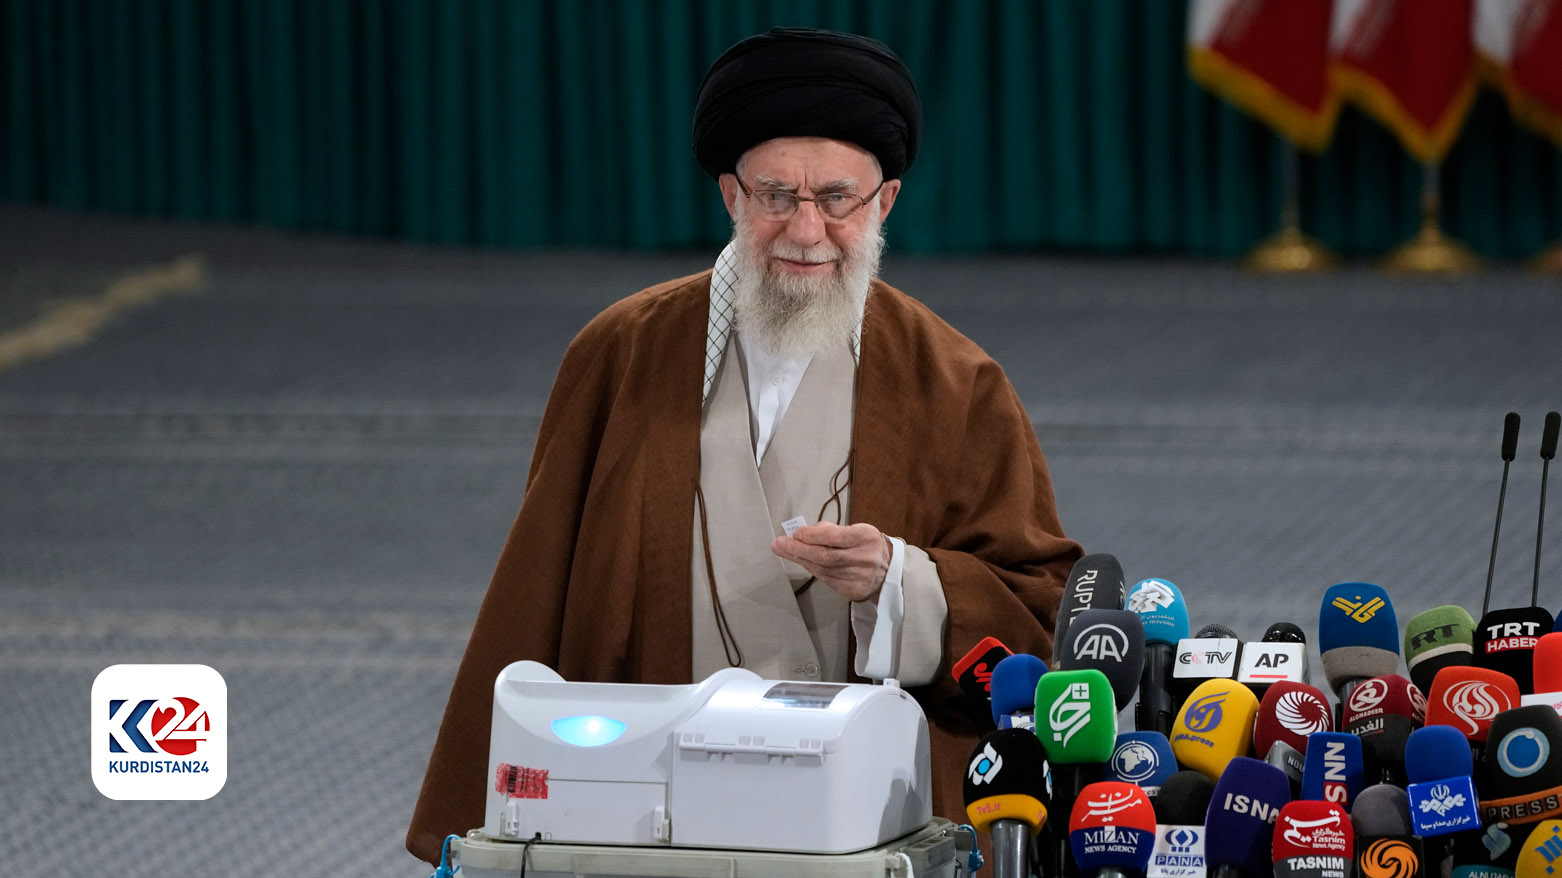 علی خامنه ای، رهبر ایران در حال رای دادن، تهران ١٠ مه ٢٠٢٤ - عکس:AP